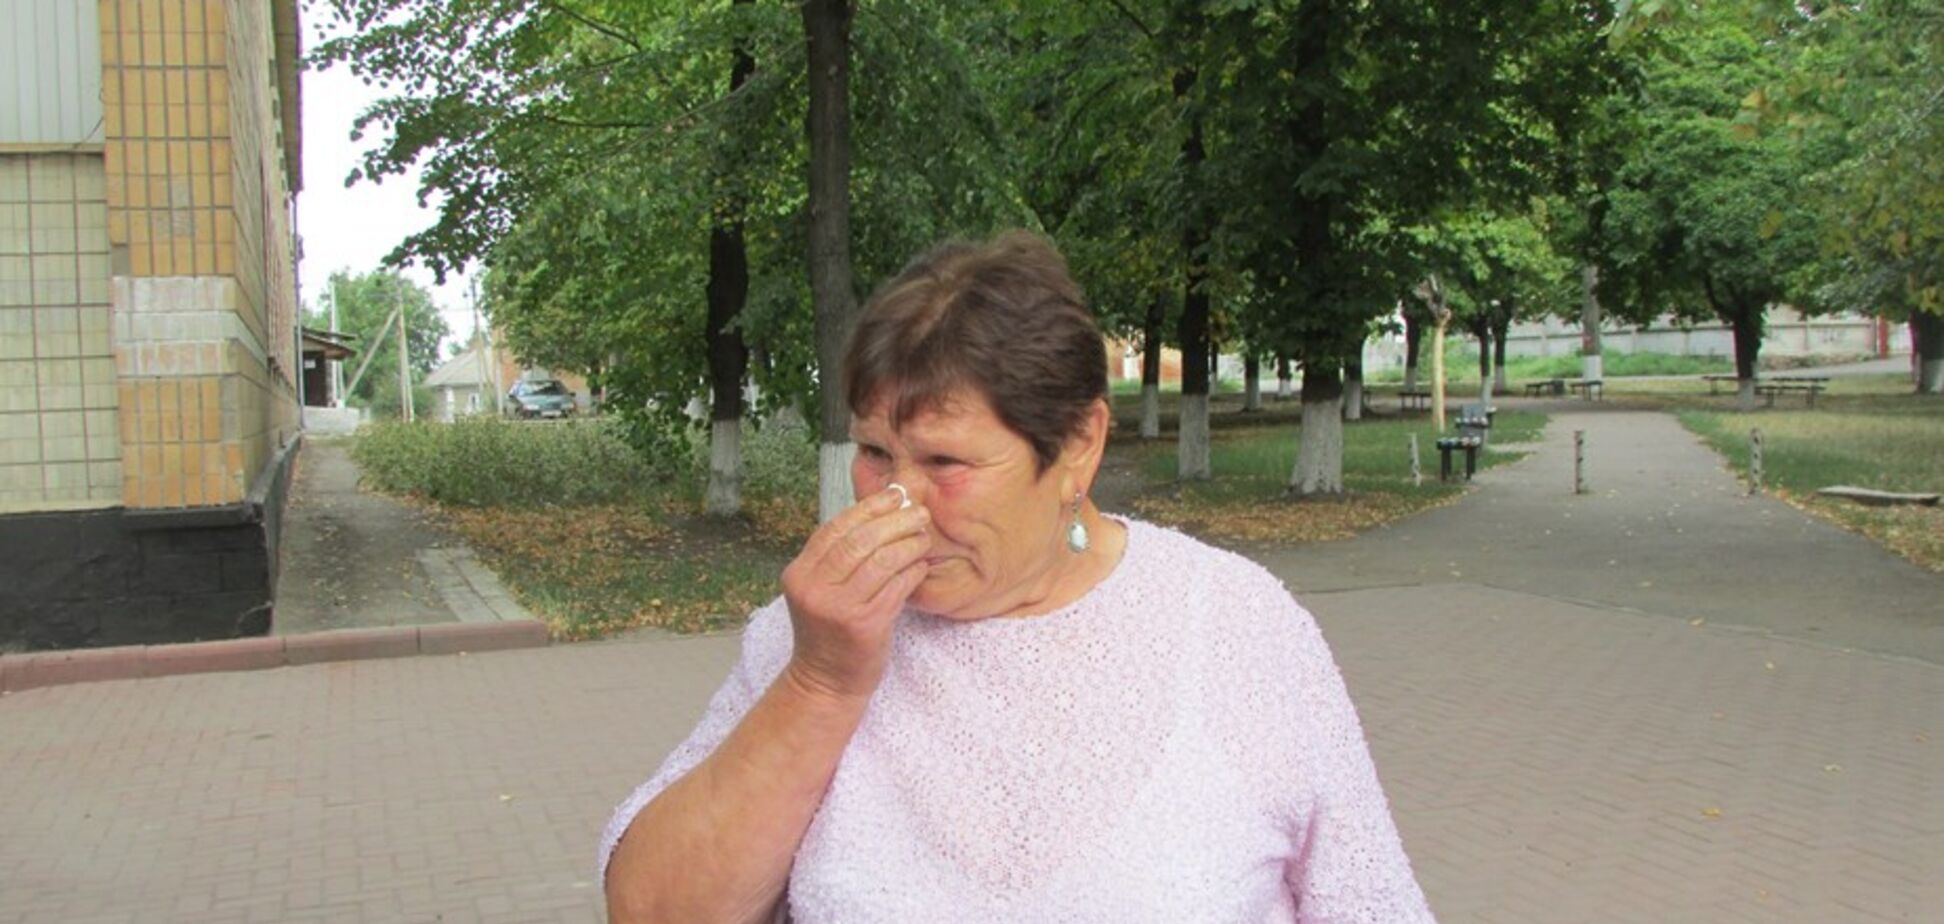 Померла ще за життя: на Кіровоградщині дочка заради спадщини 'поховала' мати